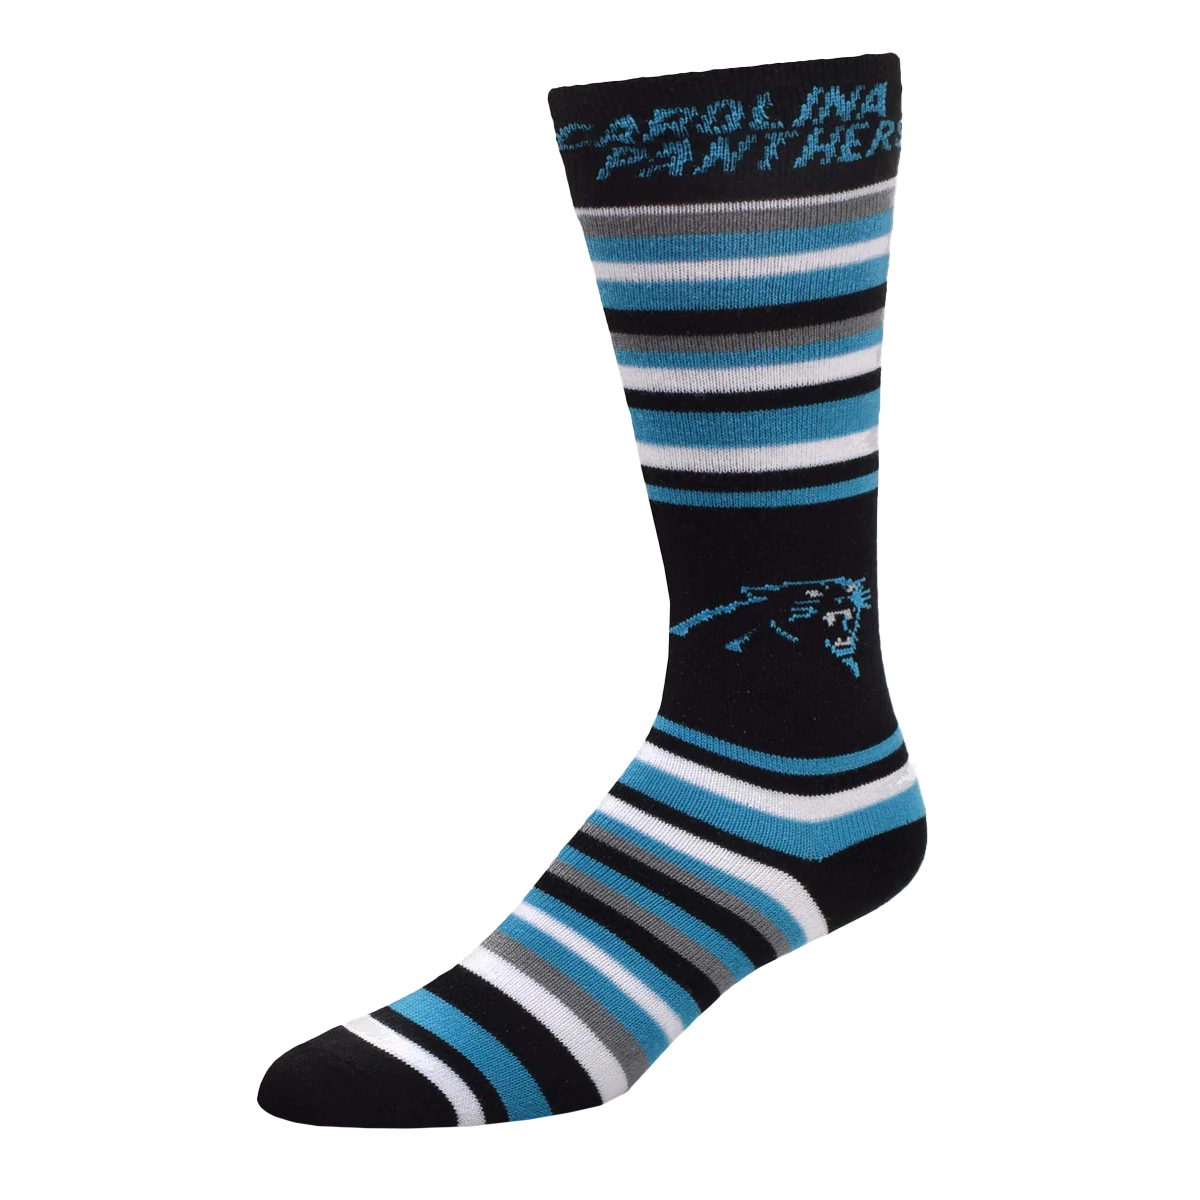 Carolina Panthers - The Boss Socks